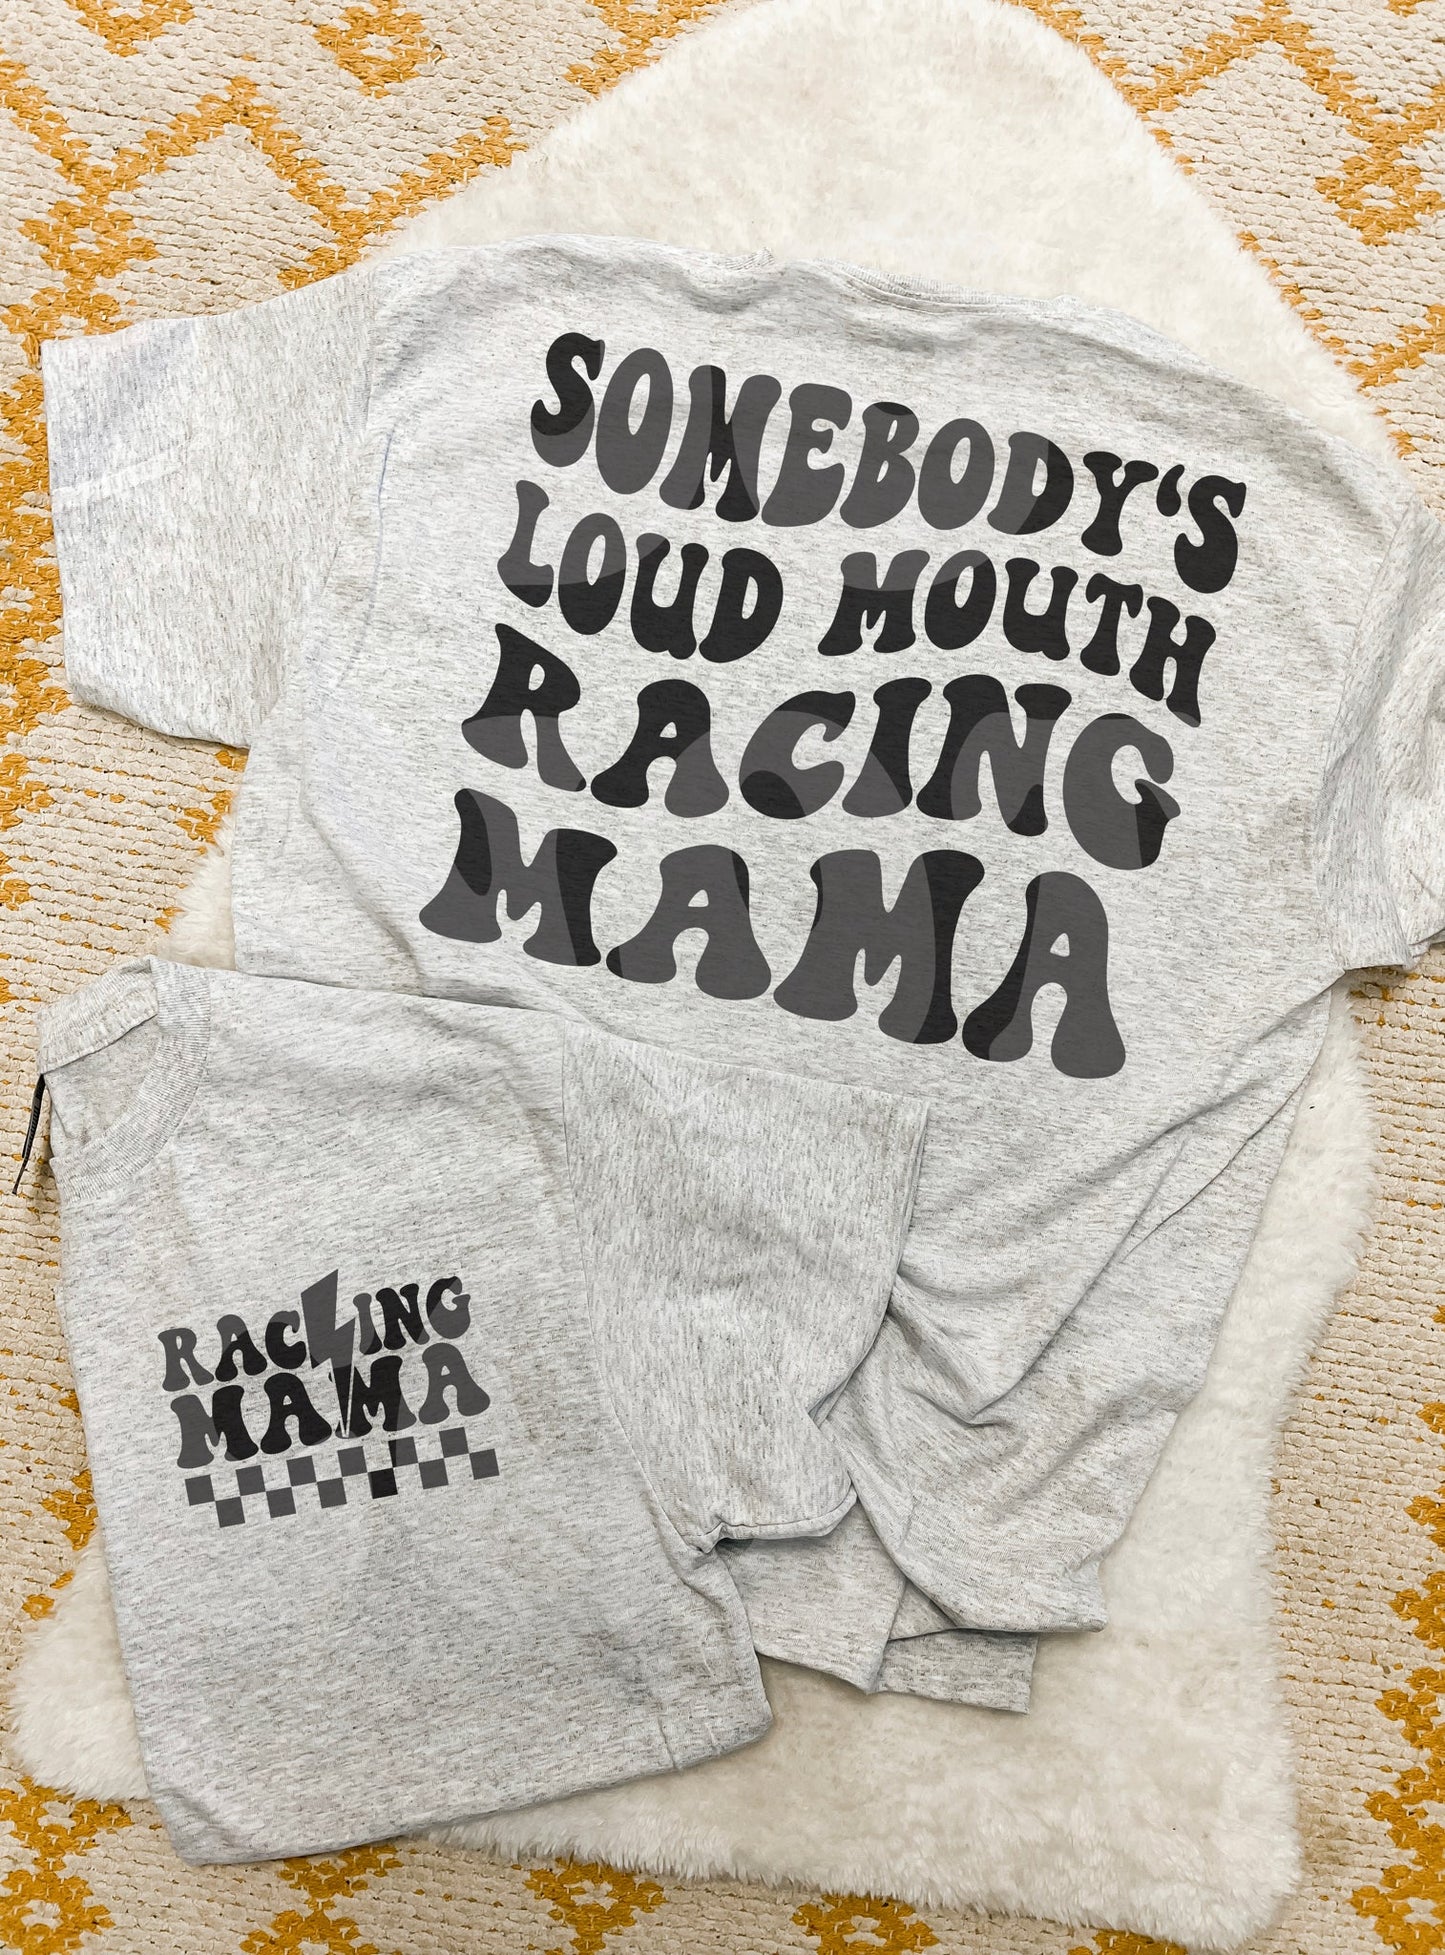 Loud Mouth Racing Mama